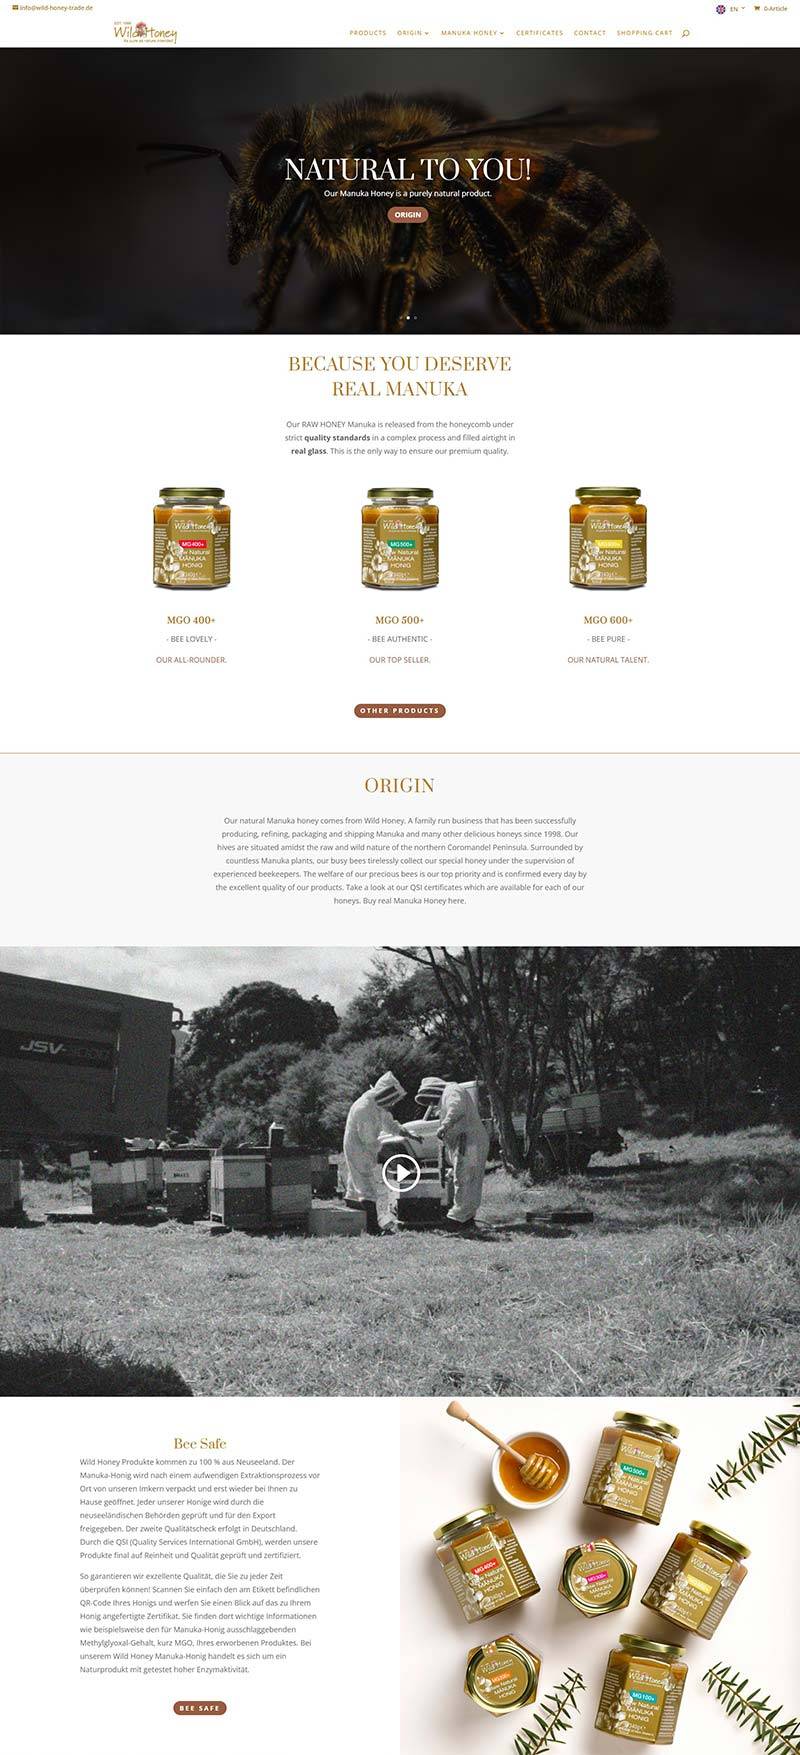 Wild Honey 德国麦卢卡野生蜂蜜品牌购物网站